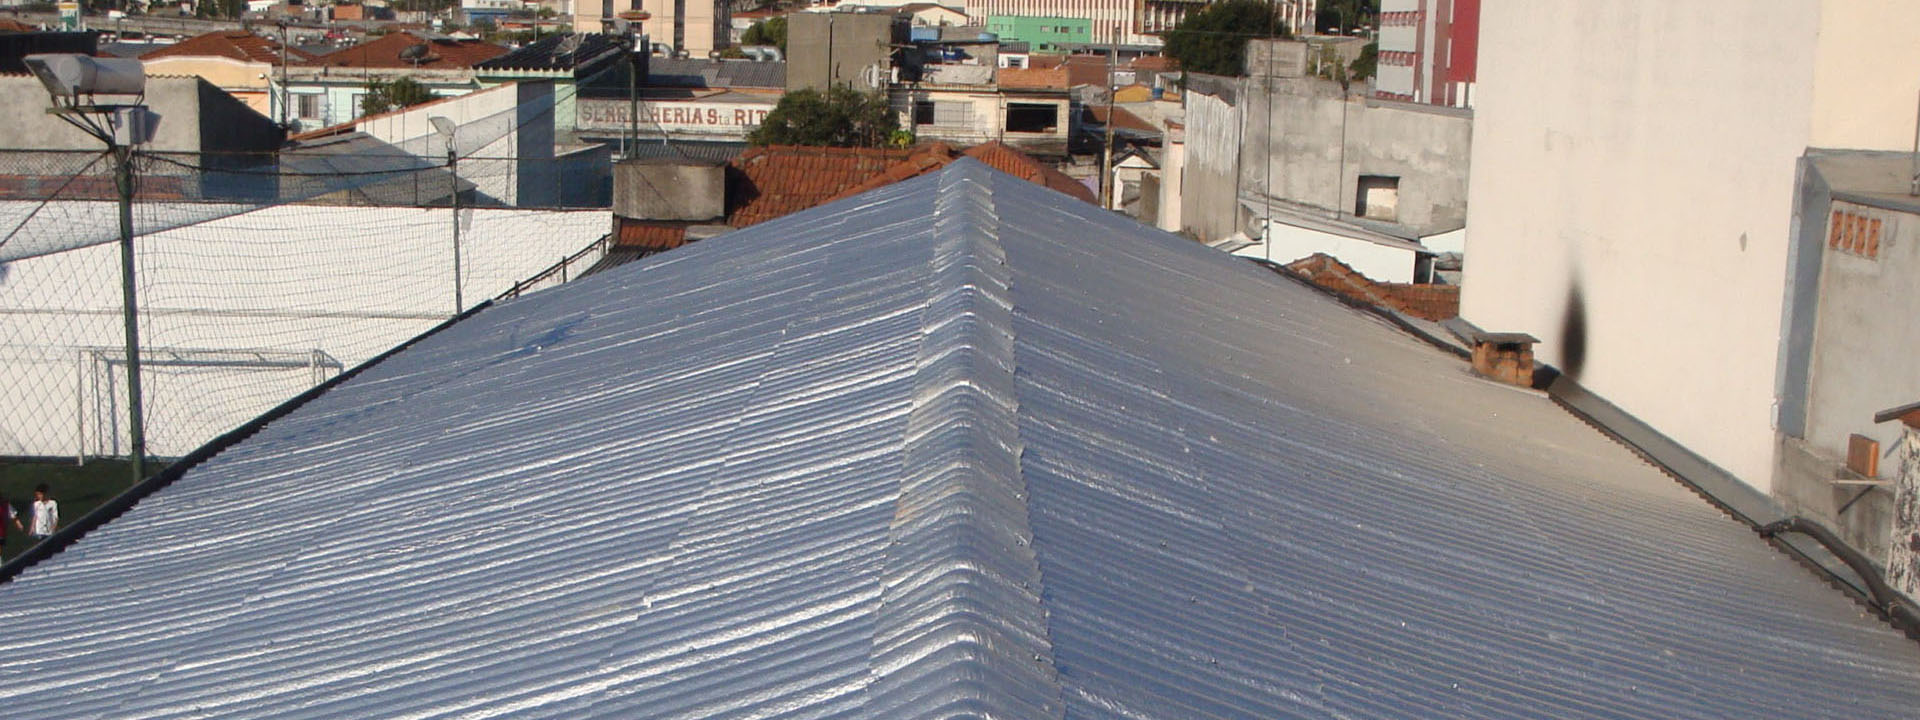 Telhado de uma casa com Telha Ecológica Térmica Ecopreserve instaladas, demonstrando a estética agradável e a eficiência das telhas na prática.